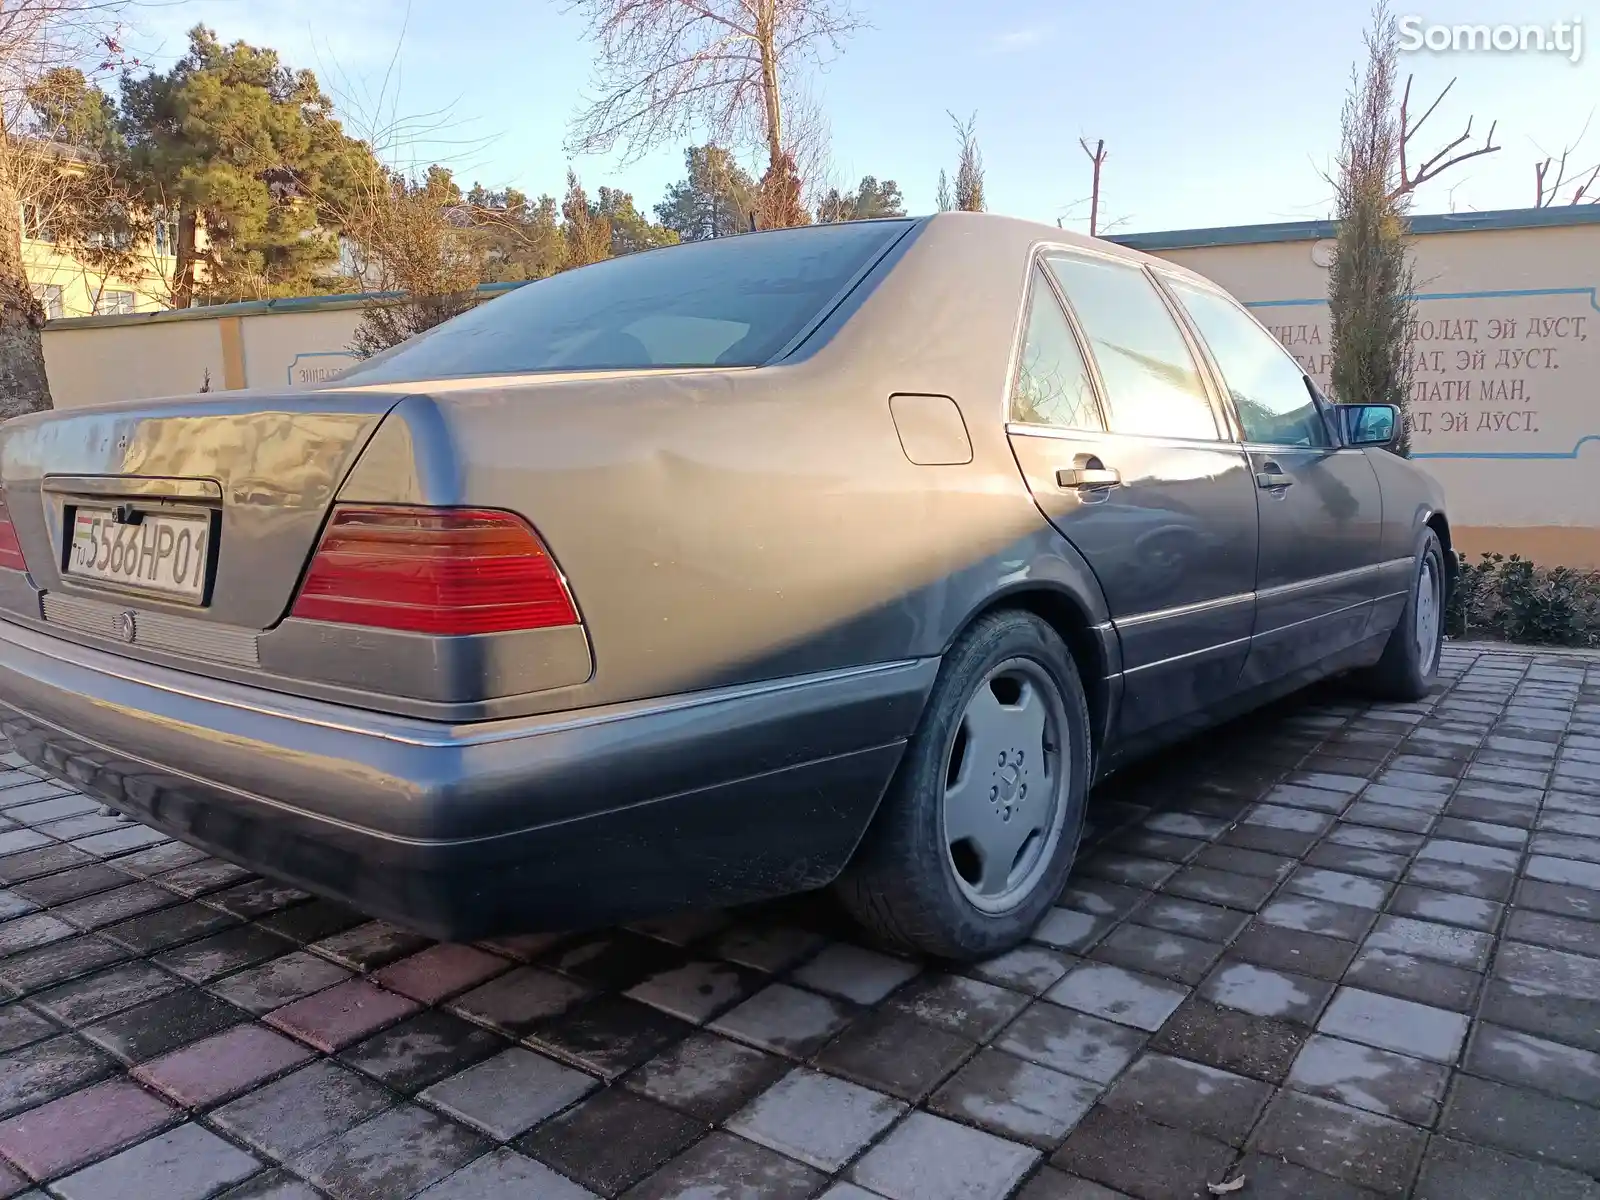 Mercedes-Benz C class, 1995-6